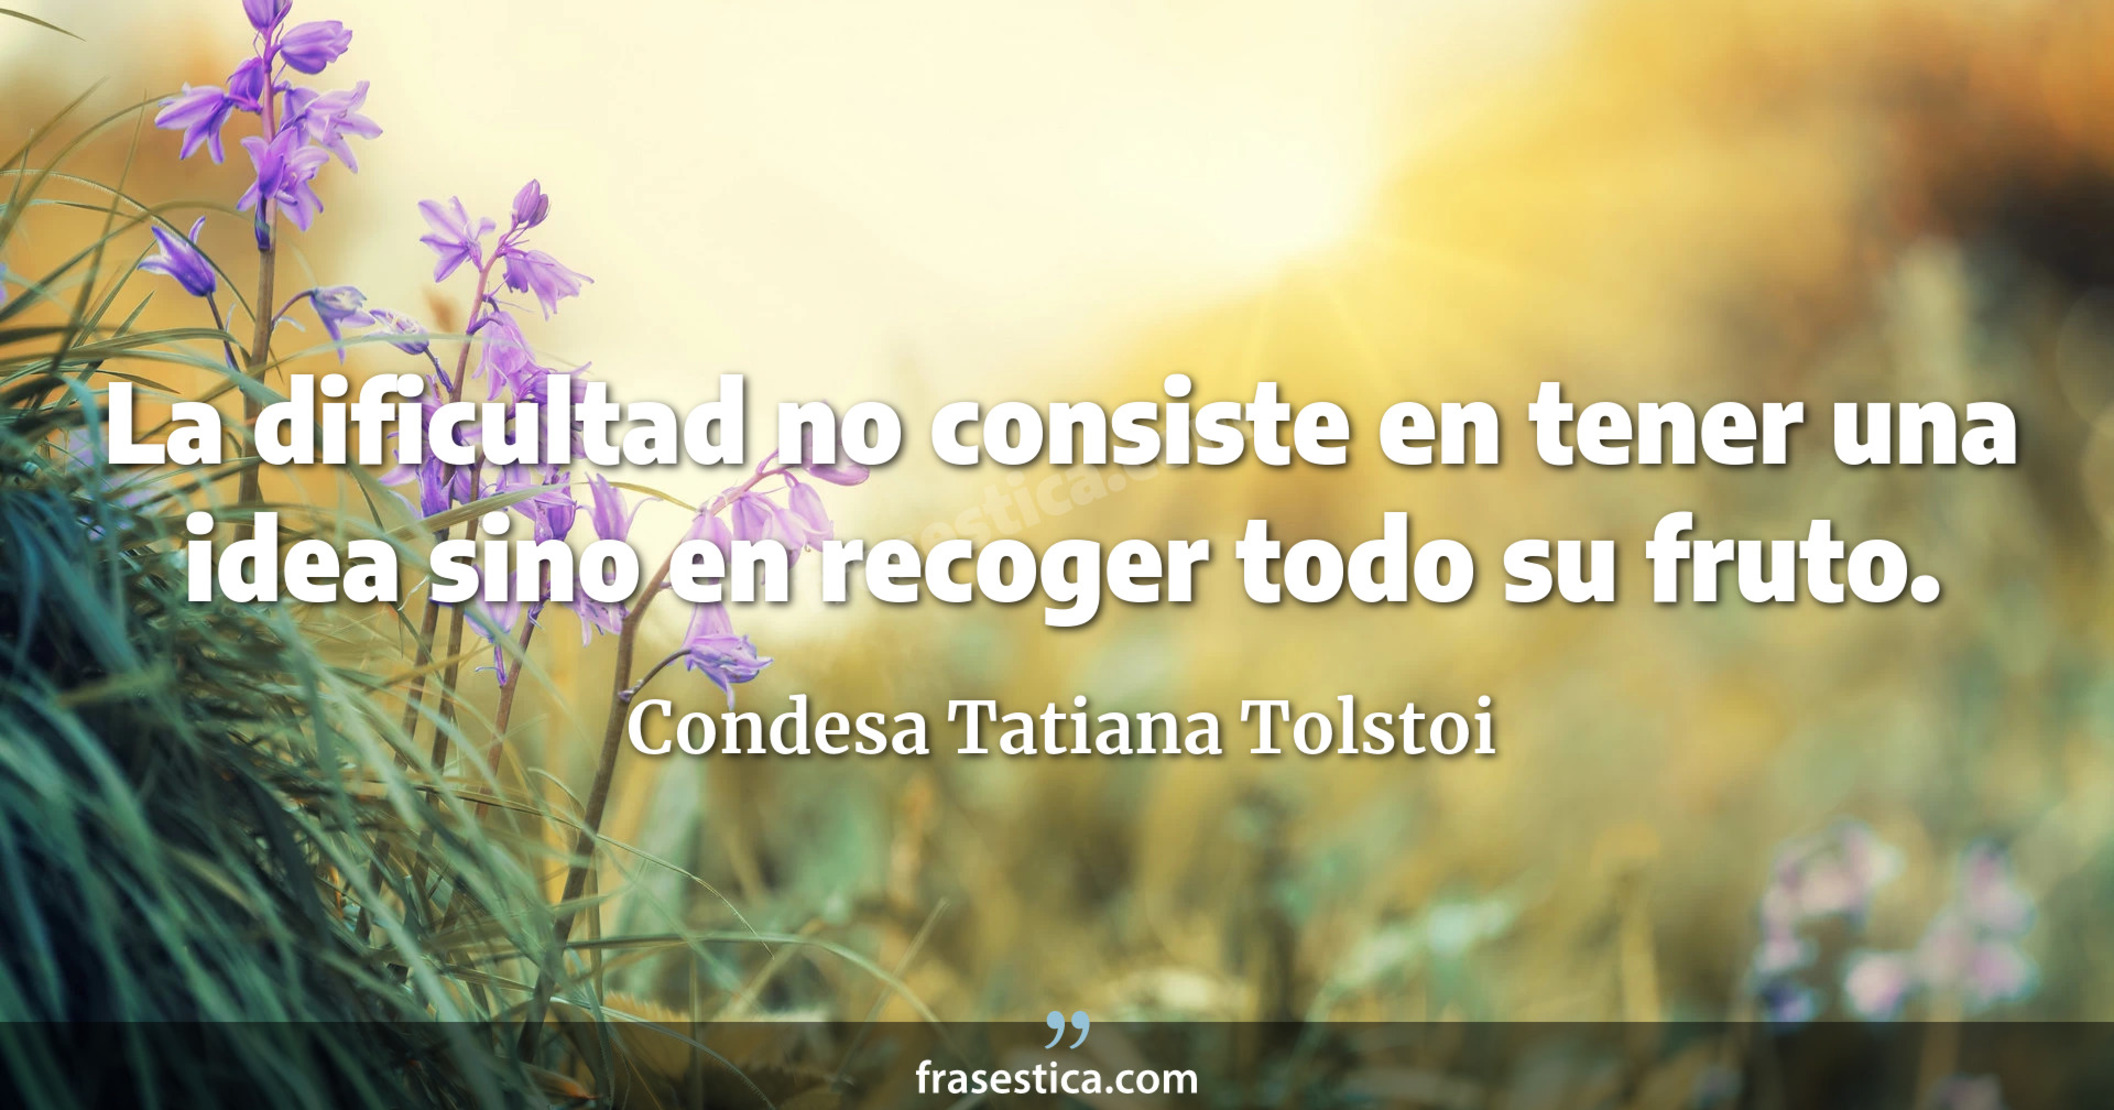 La dificultad no consiste en tener una idea sino en recoger todo su fruto. - Condesa Tatiana Tolstoi